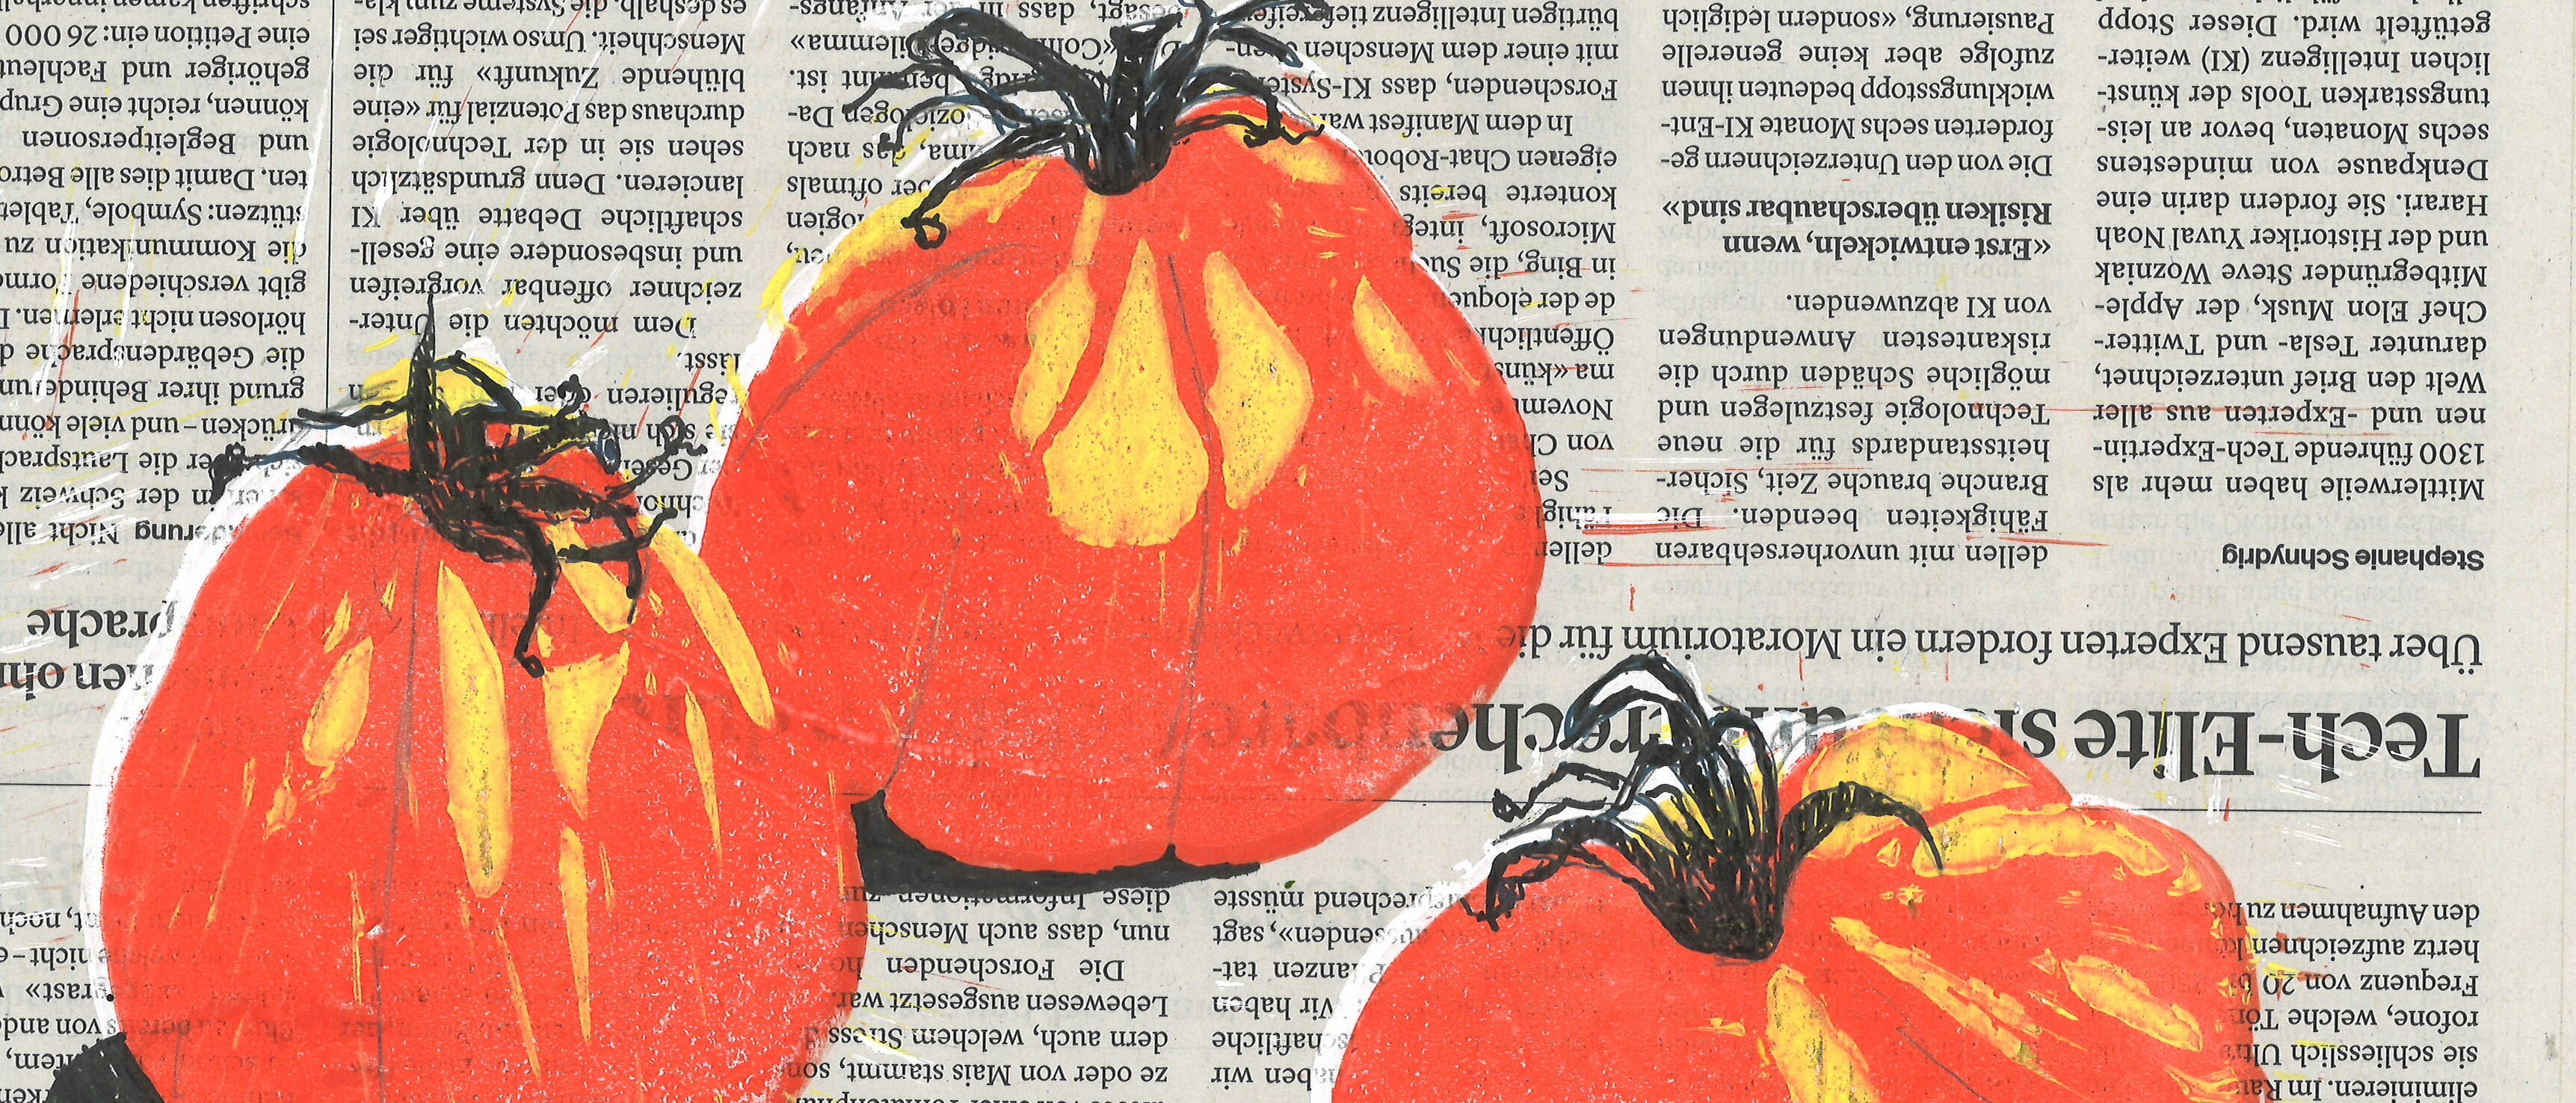 Der Student Balthasar Dahler hat Tomaten auf Zeitungspapier gemalt. 